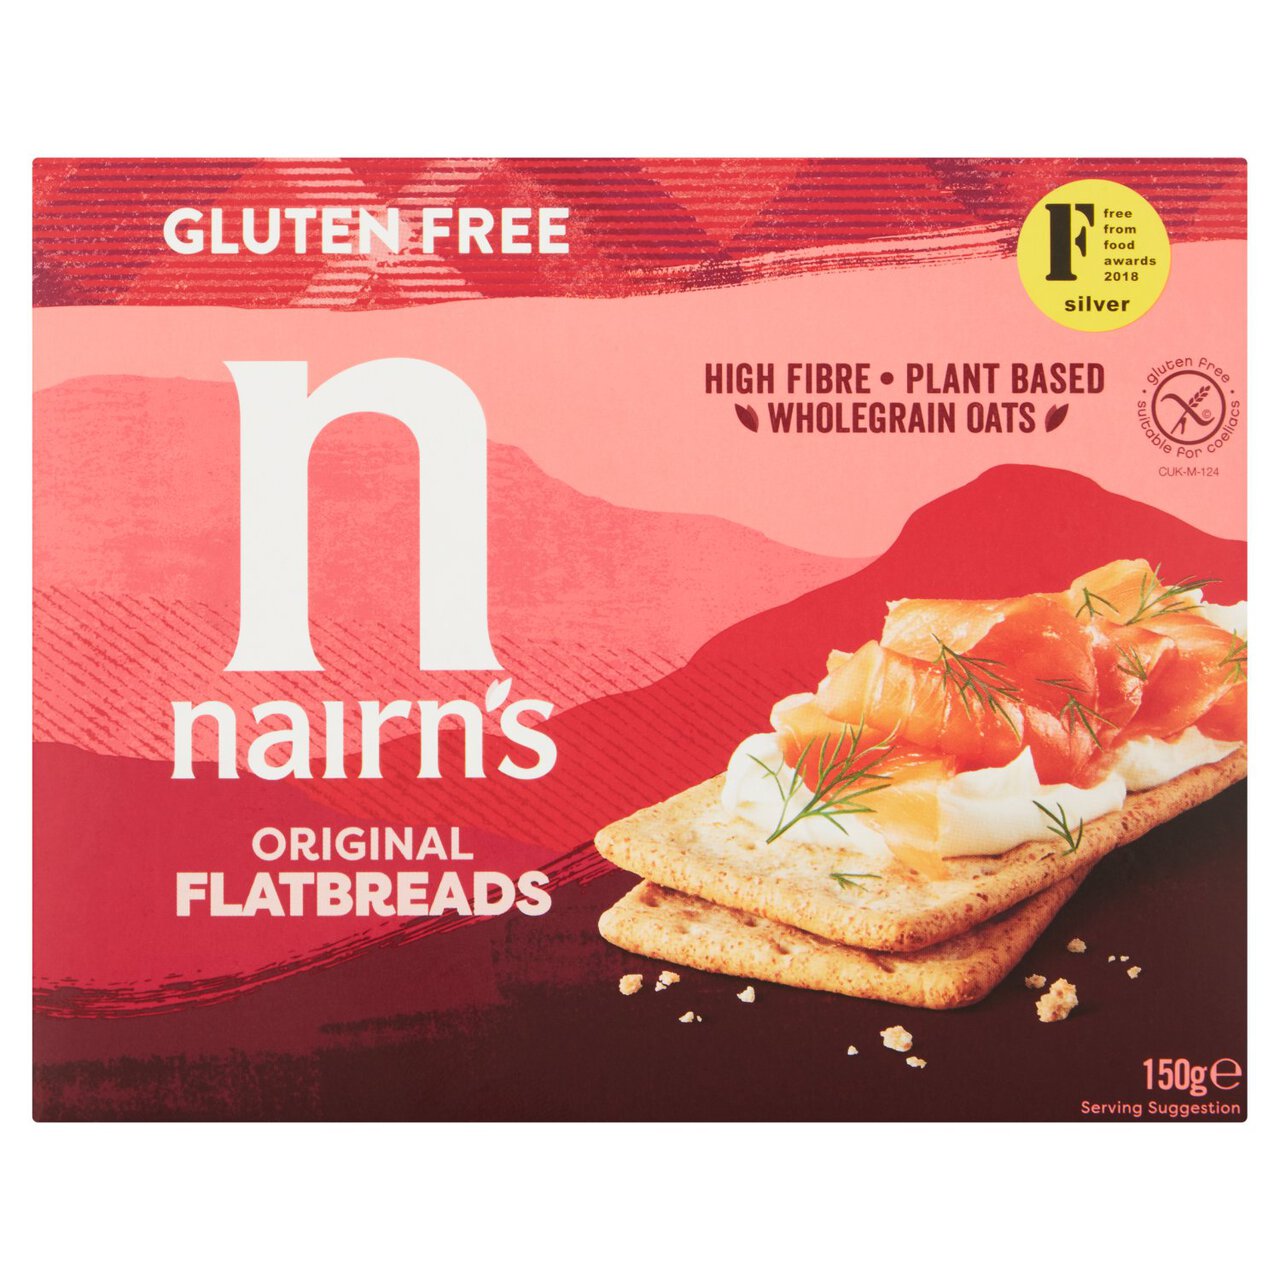 Nairns Gluten Free Flatbreads Original 150g